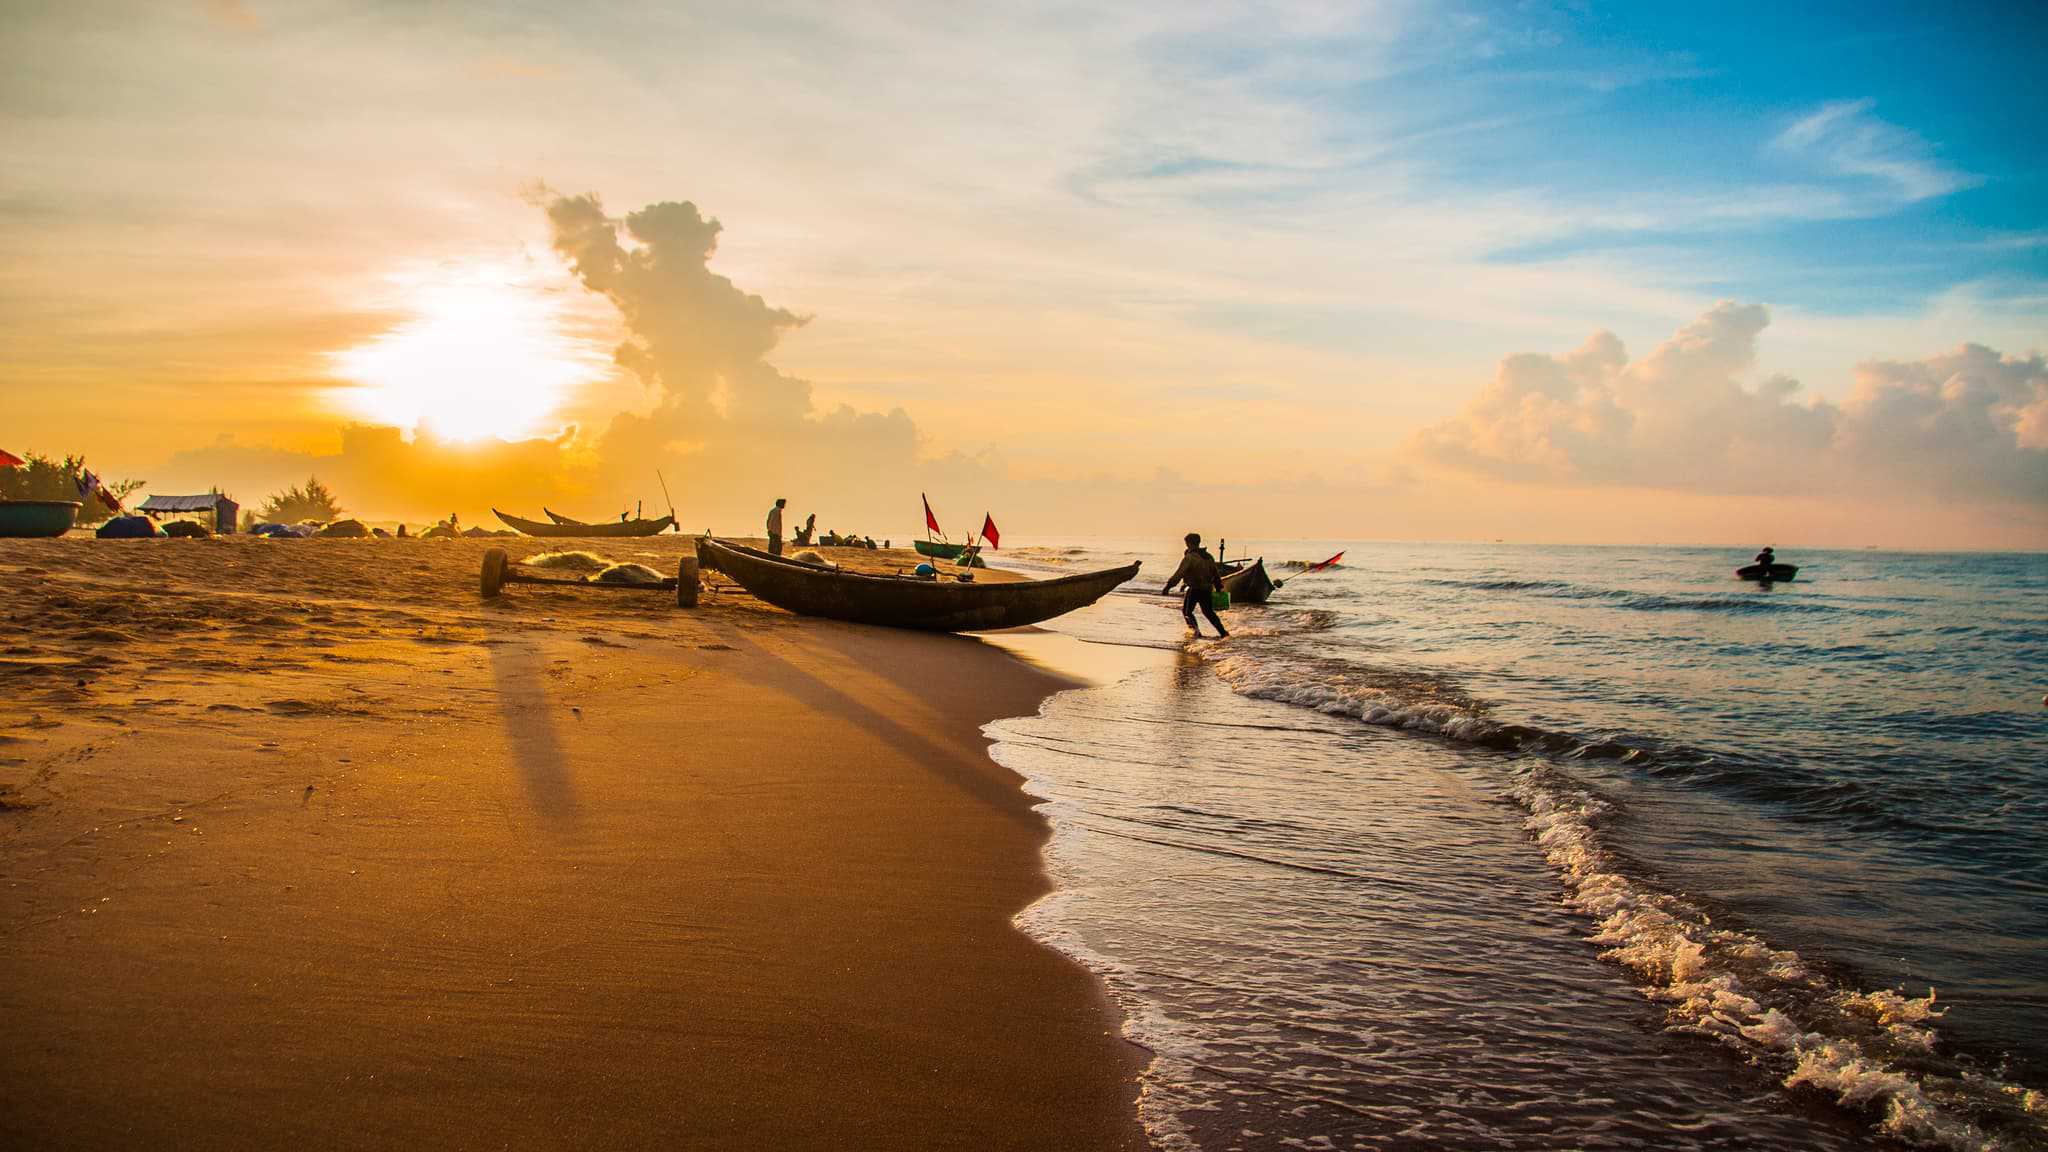 Danh Sách 8 Bãi Biển đẹp Nhất Việt Nam Không Thể Bỏ Qua